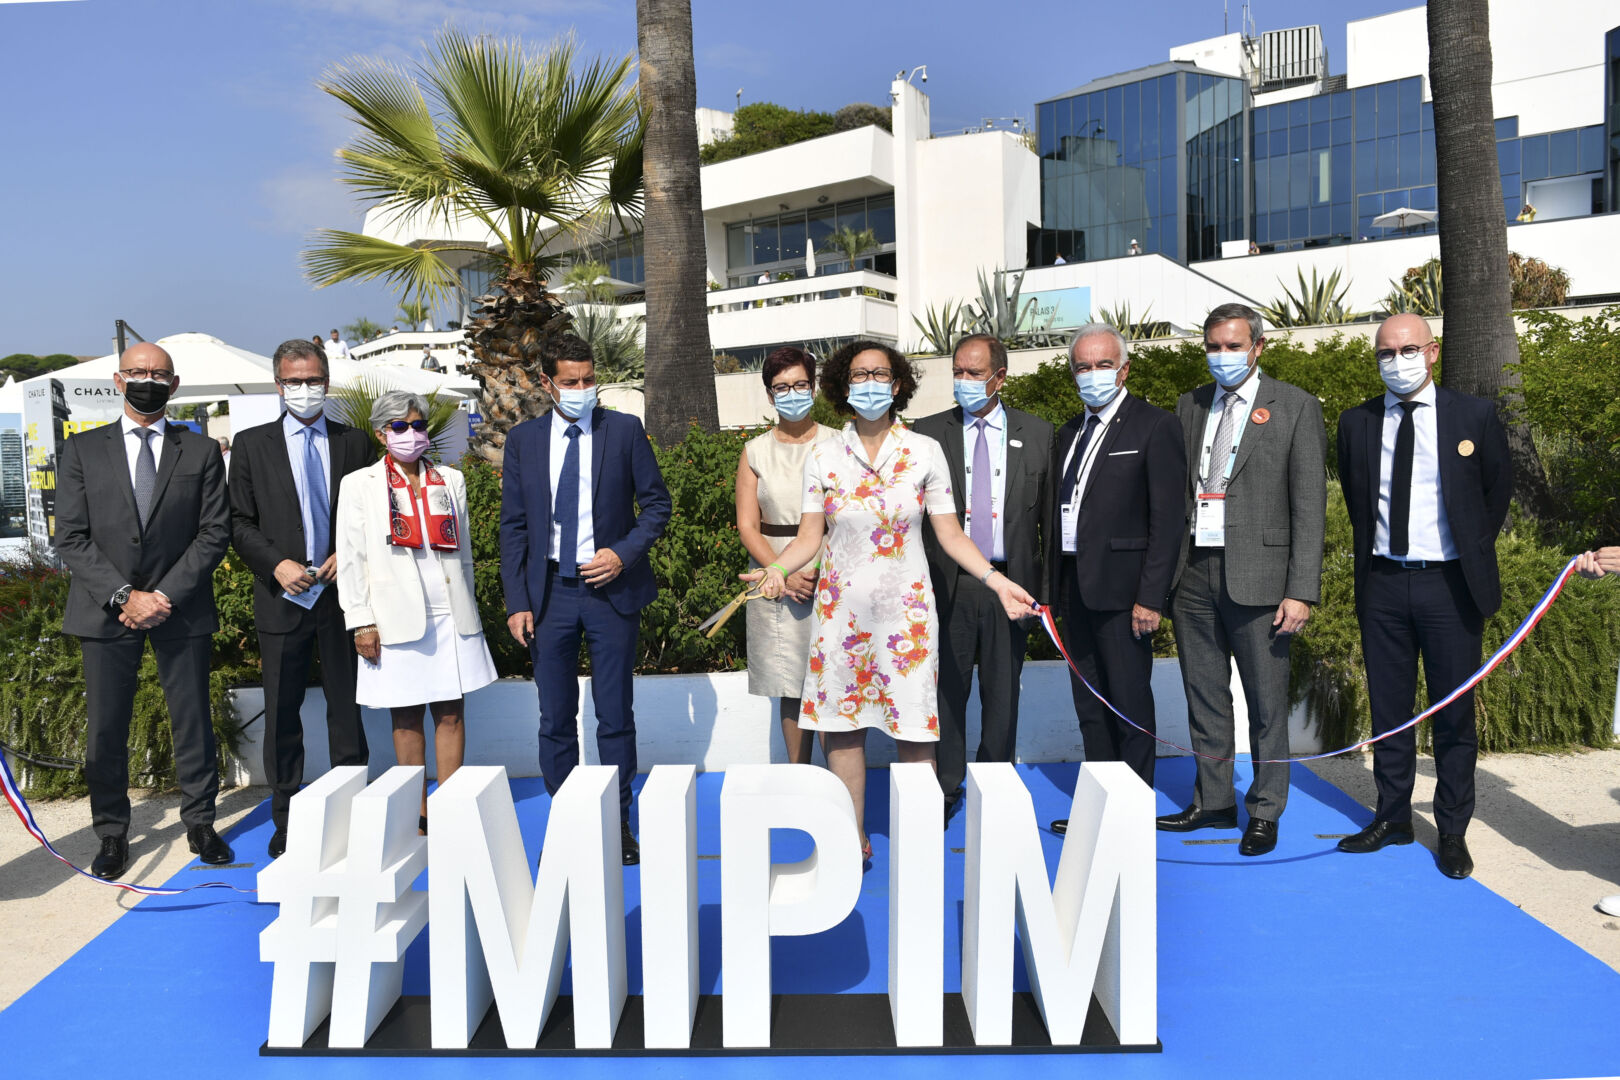 Le Mipim 2022 est de retour à Cannes